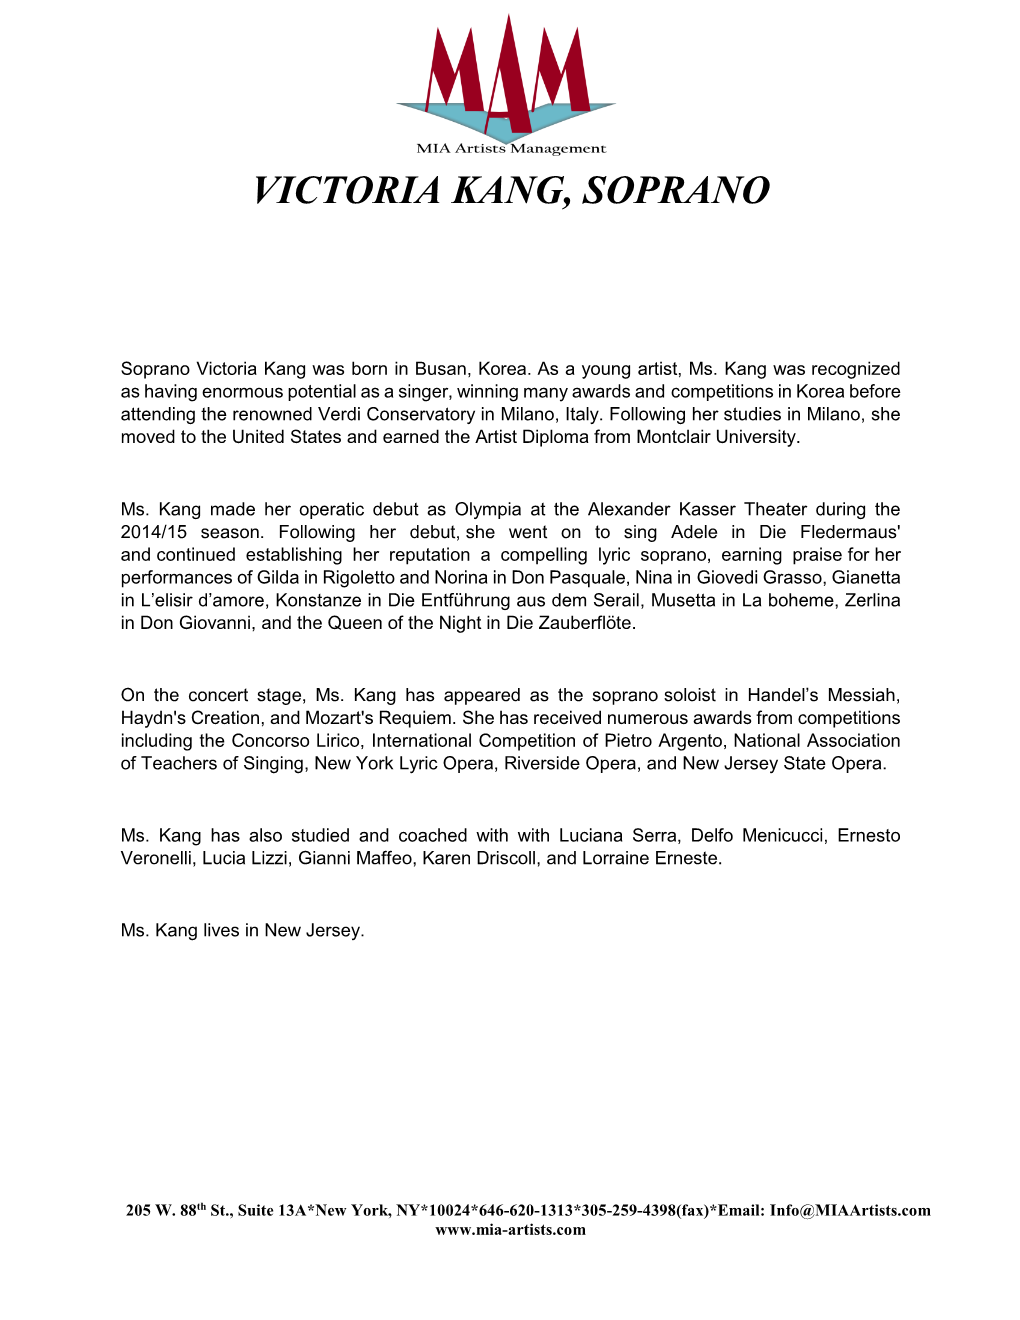 Victoria Kang, Soprano